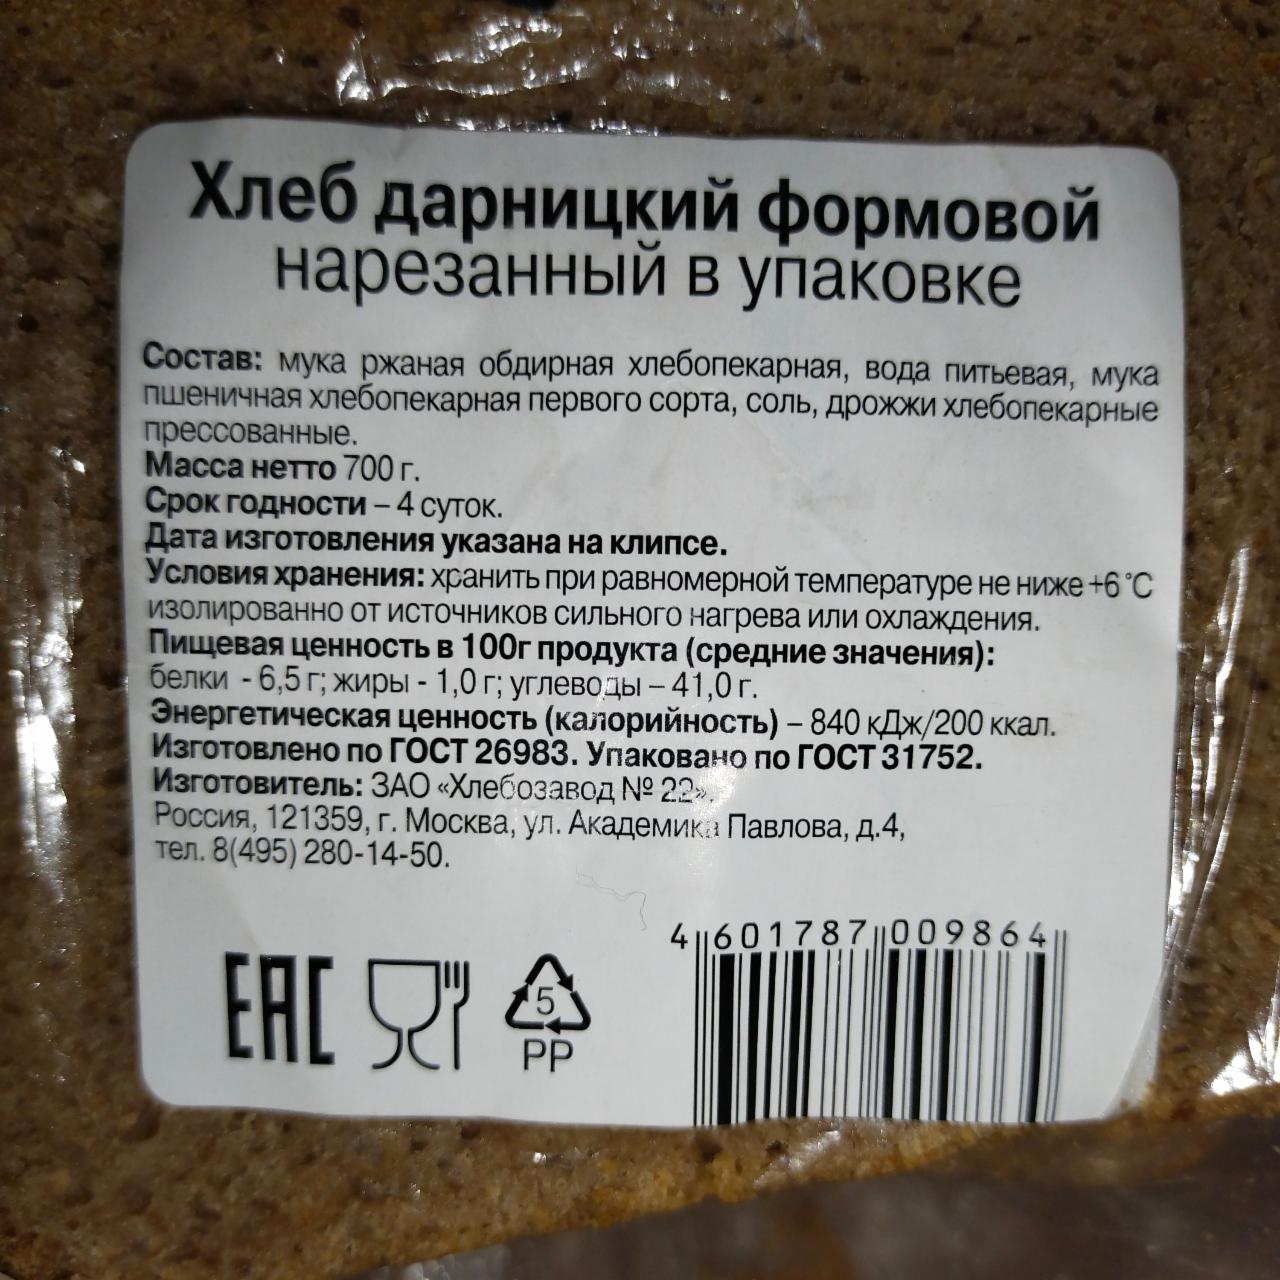 Фото - Хлеб нарезанный формовой Дарницкий в упаковке батон чёрный Хлебозавод 22